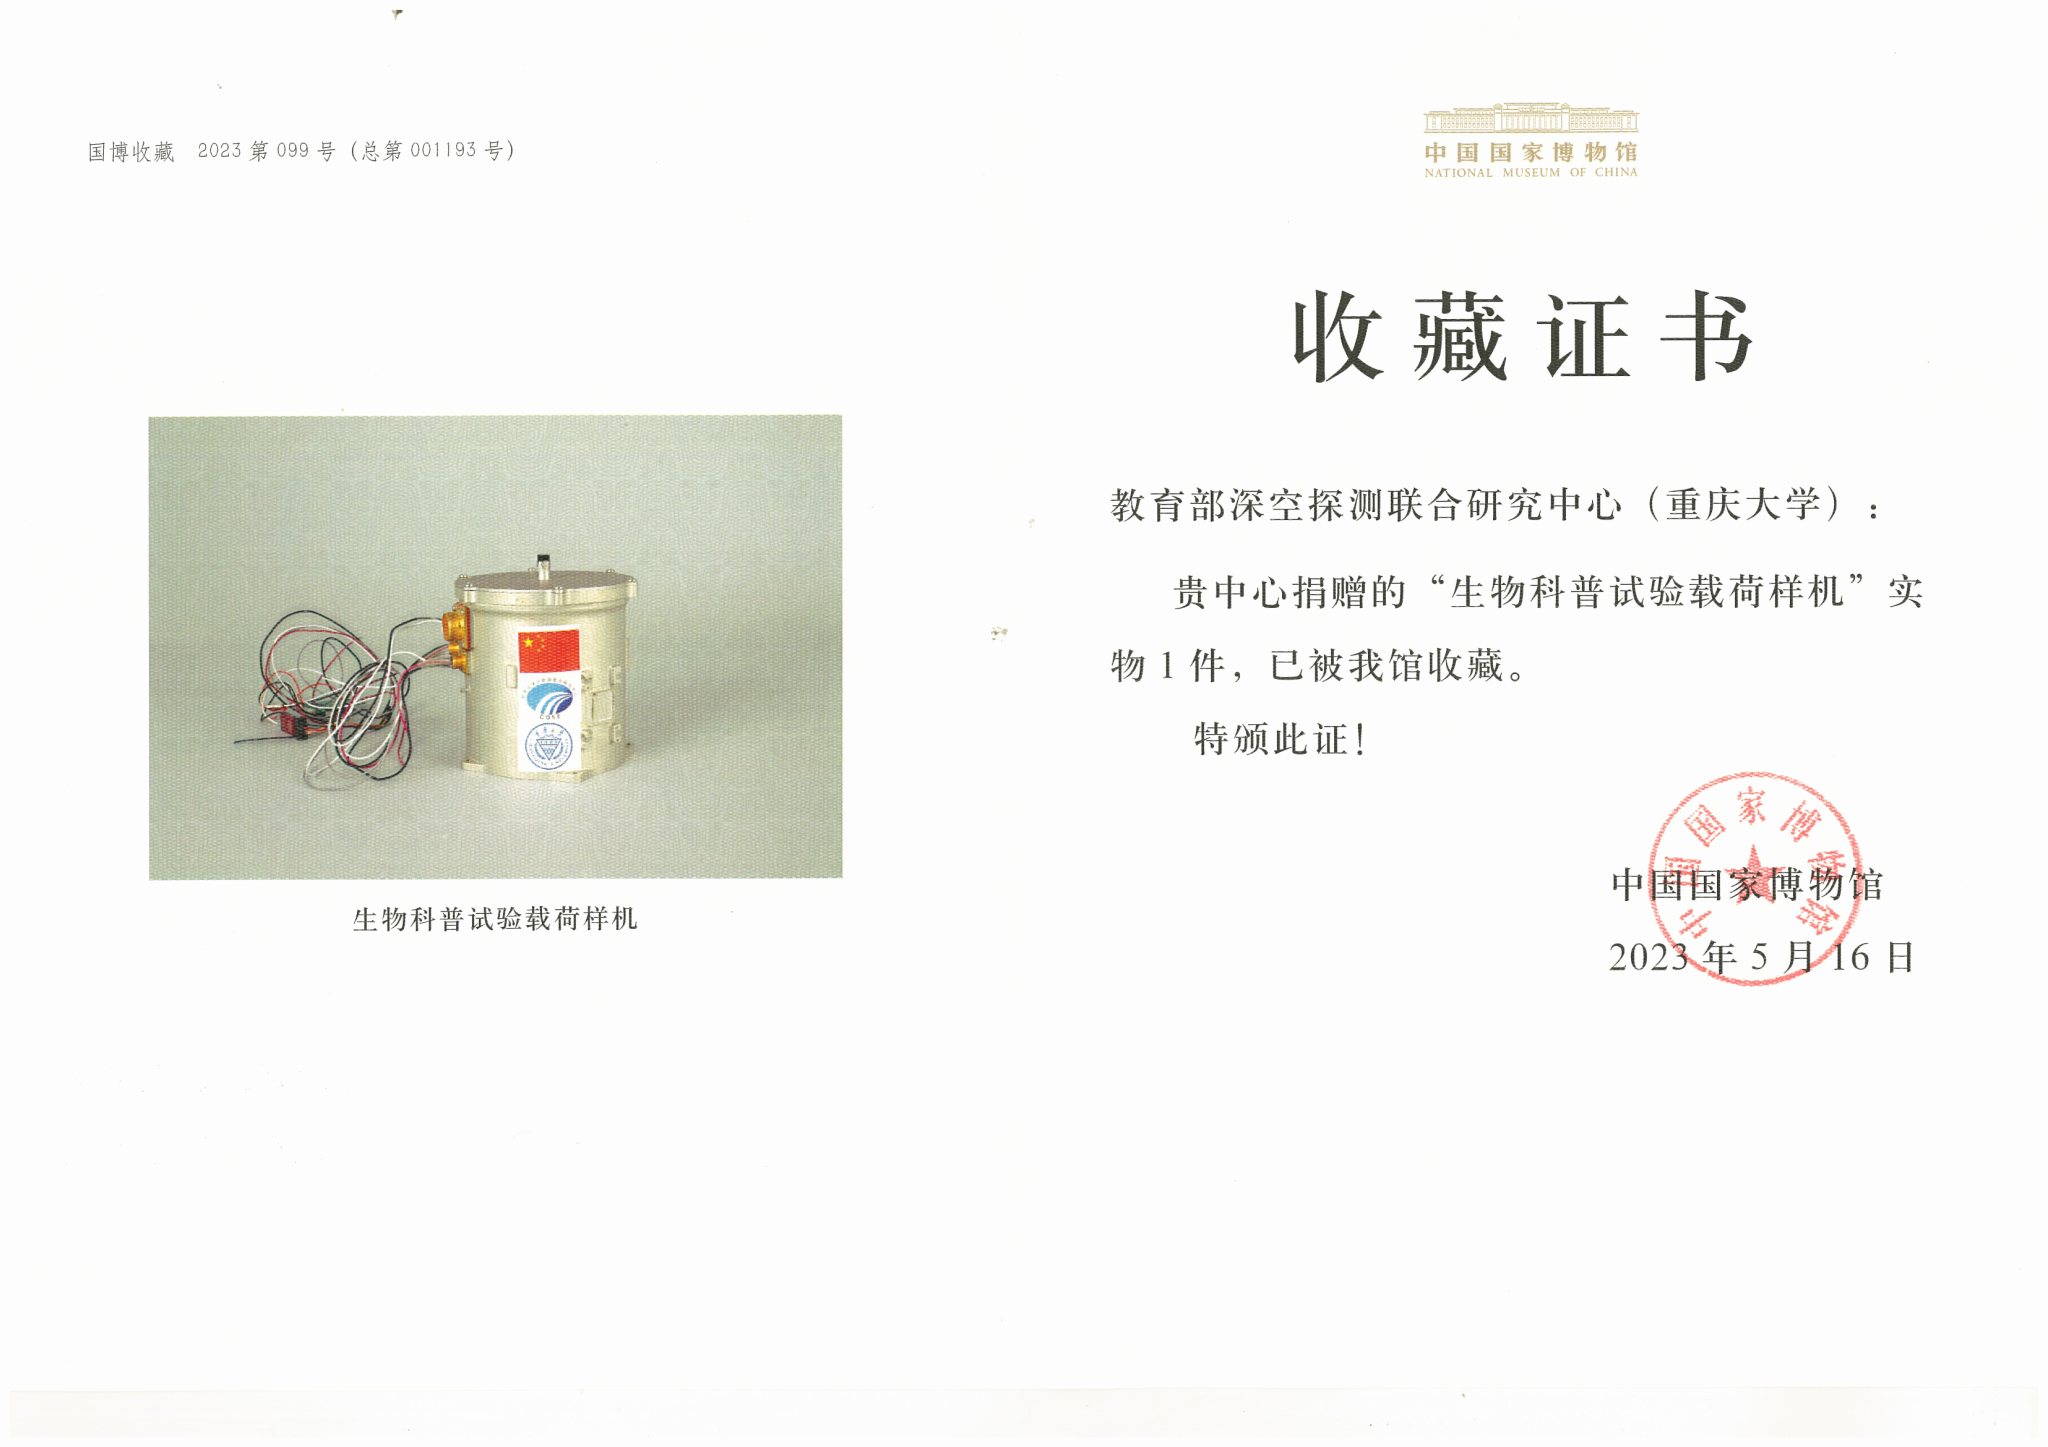 嫦娥四号任务生物实验载荷罐被中国国家博物馆永久收藏